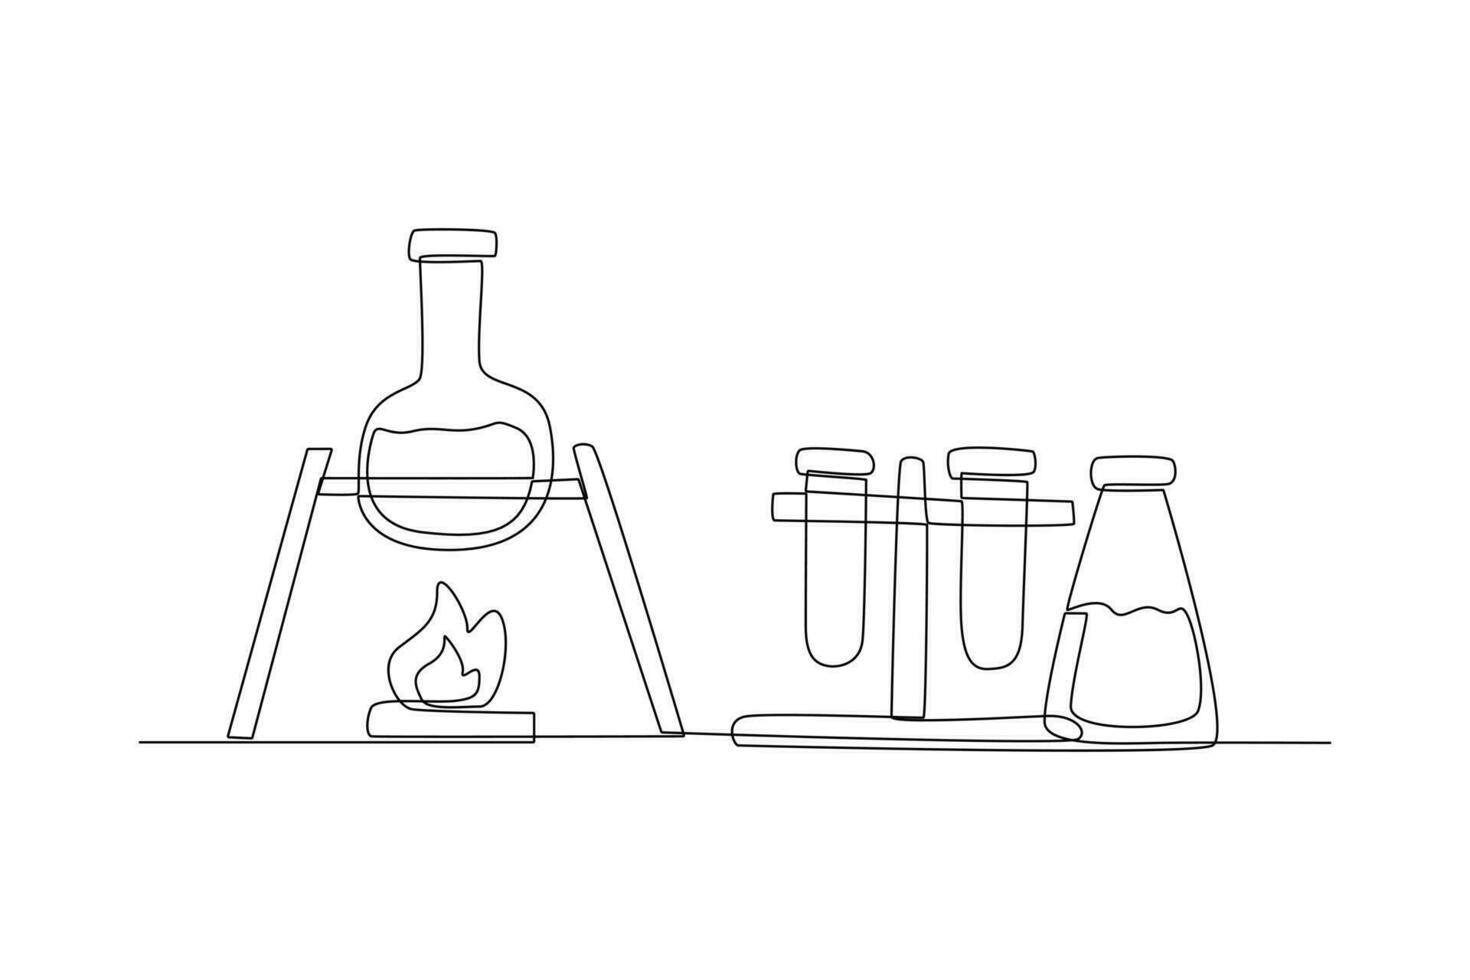 einer kontinuierlich Linie Zeichnung von Chemie und Physik Labor Ausrüstung Konzept. Gekritzel Vektor Illustration im einfach linear Stil.